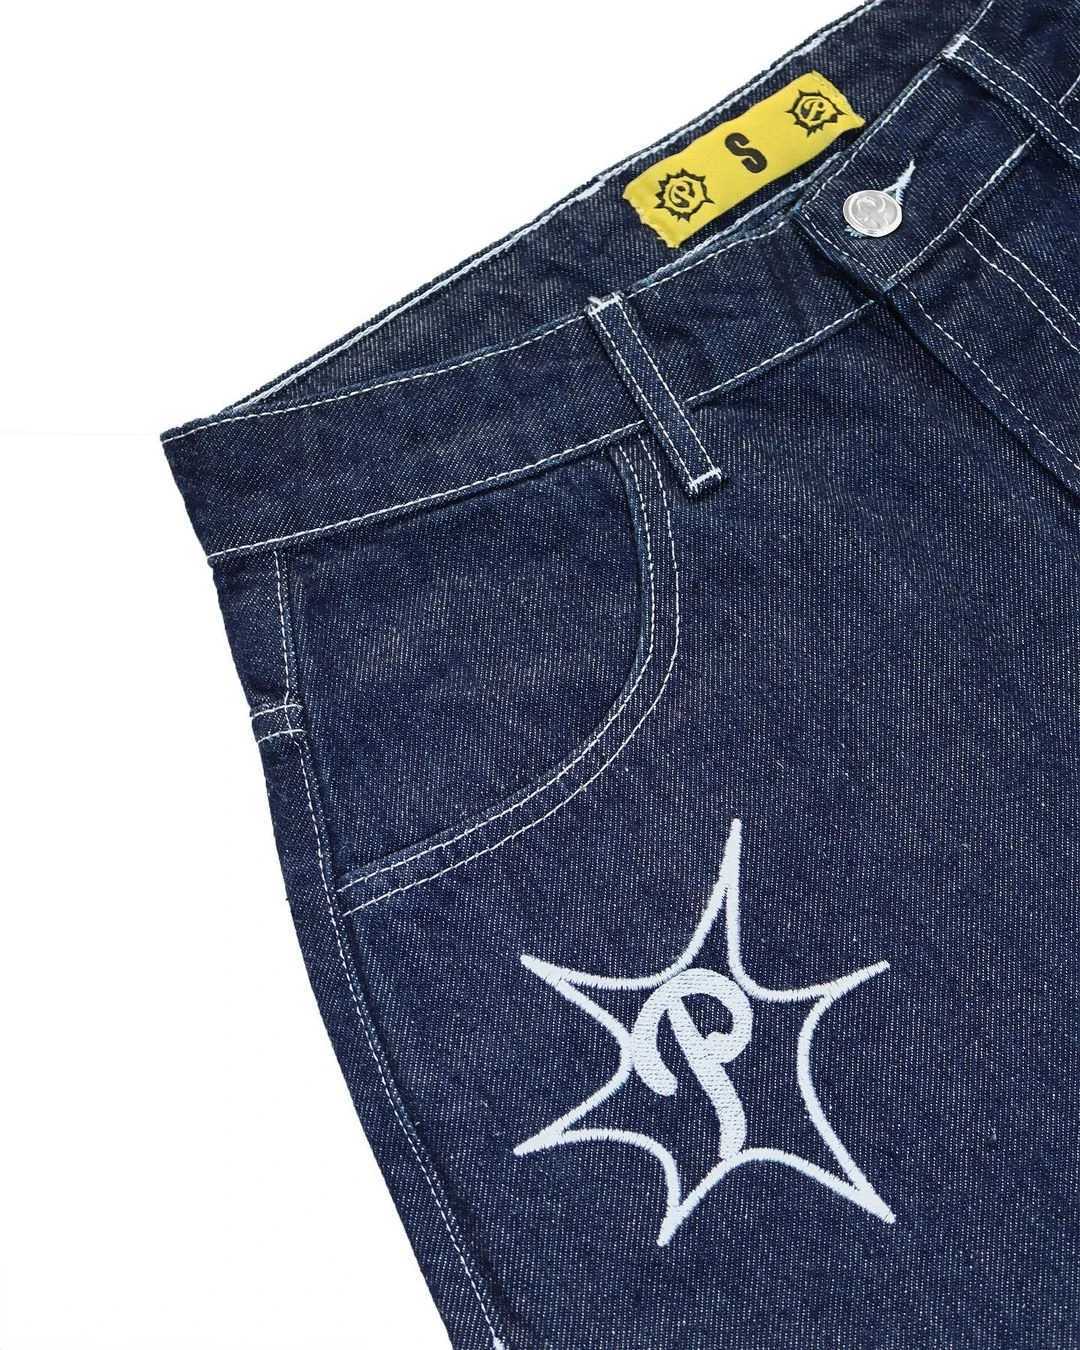 Heren shorts y2k hiphop vintage losse Jorts Harajuku strtwear zomer punk rock tter broidery mode denim shorts heren kleding h240508